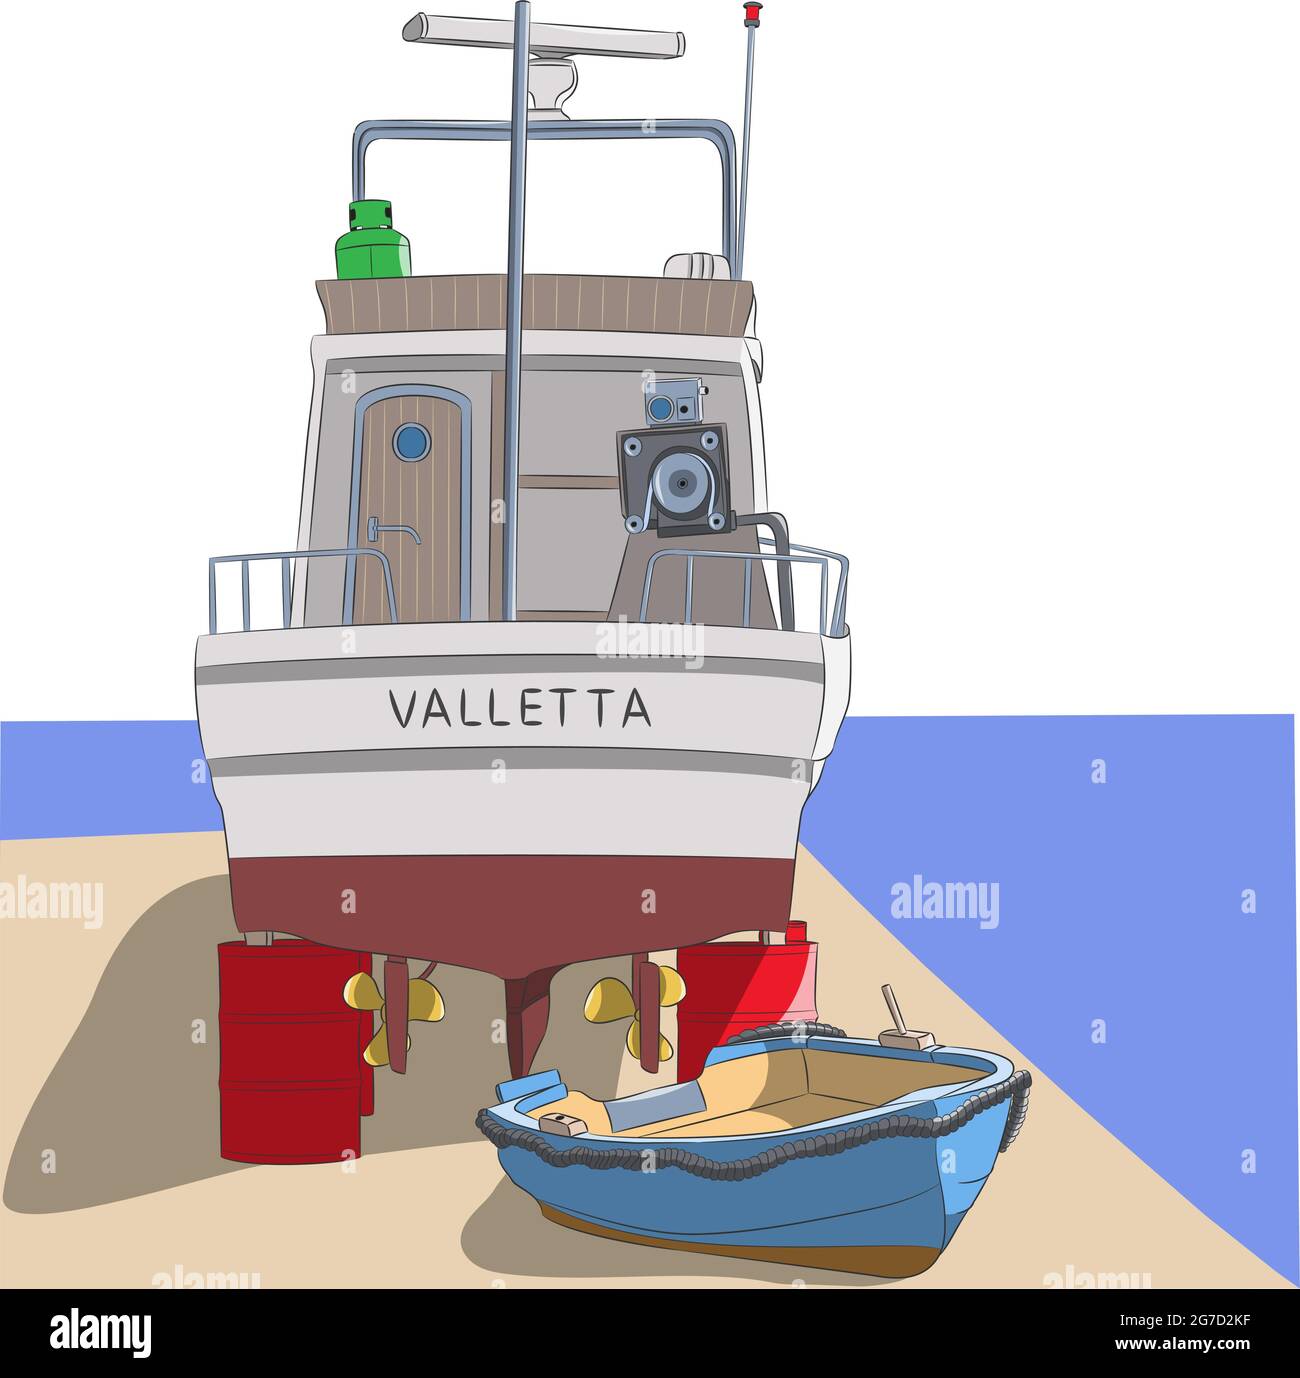 Una barca da pesca su botti rosse e una barca a remi blu sul terrapieno della Valletta. Illustrazione vettoriale. Illustrazione Vettoriale